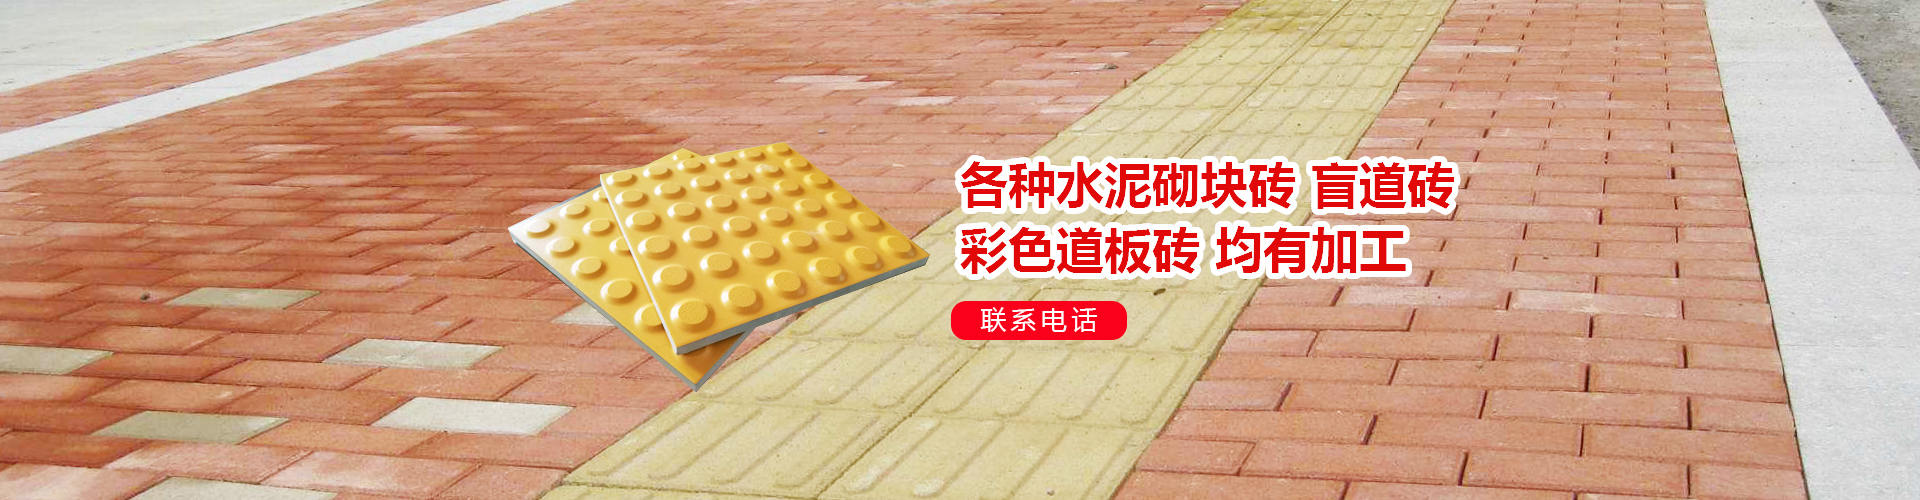 水泥砌塊磚,面包磚,彩色道板磚_啟東美欣新型建材有限公司